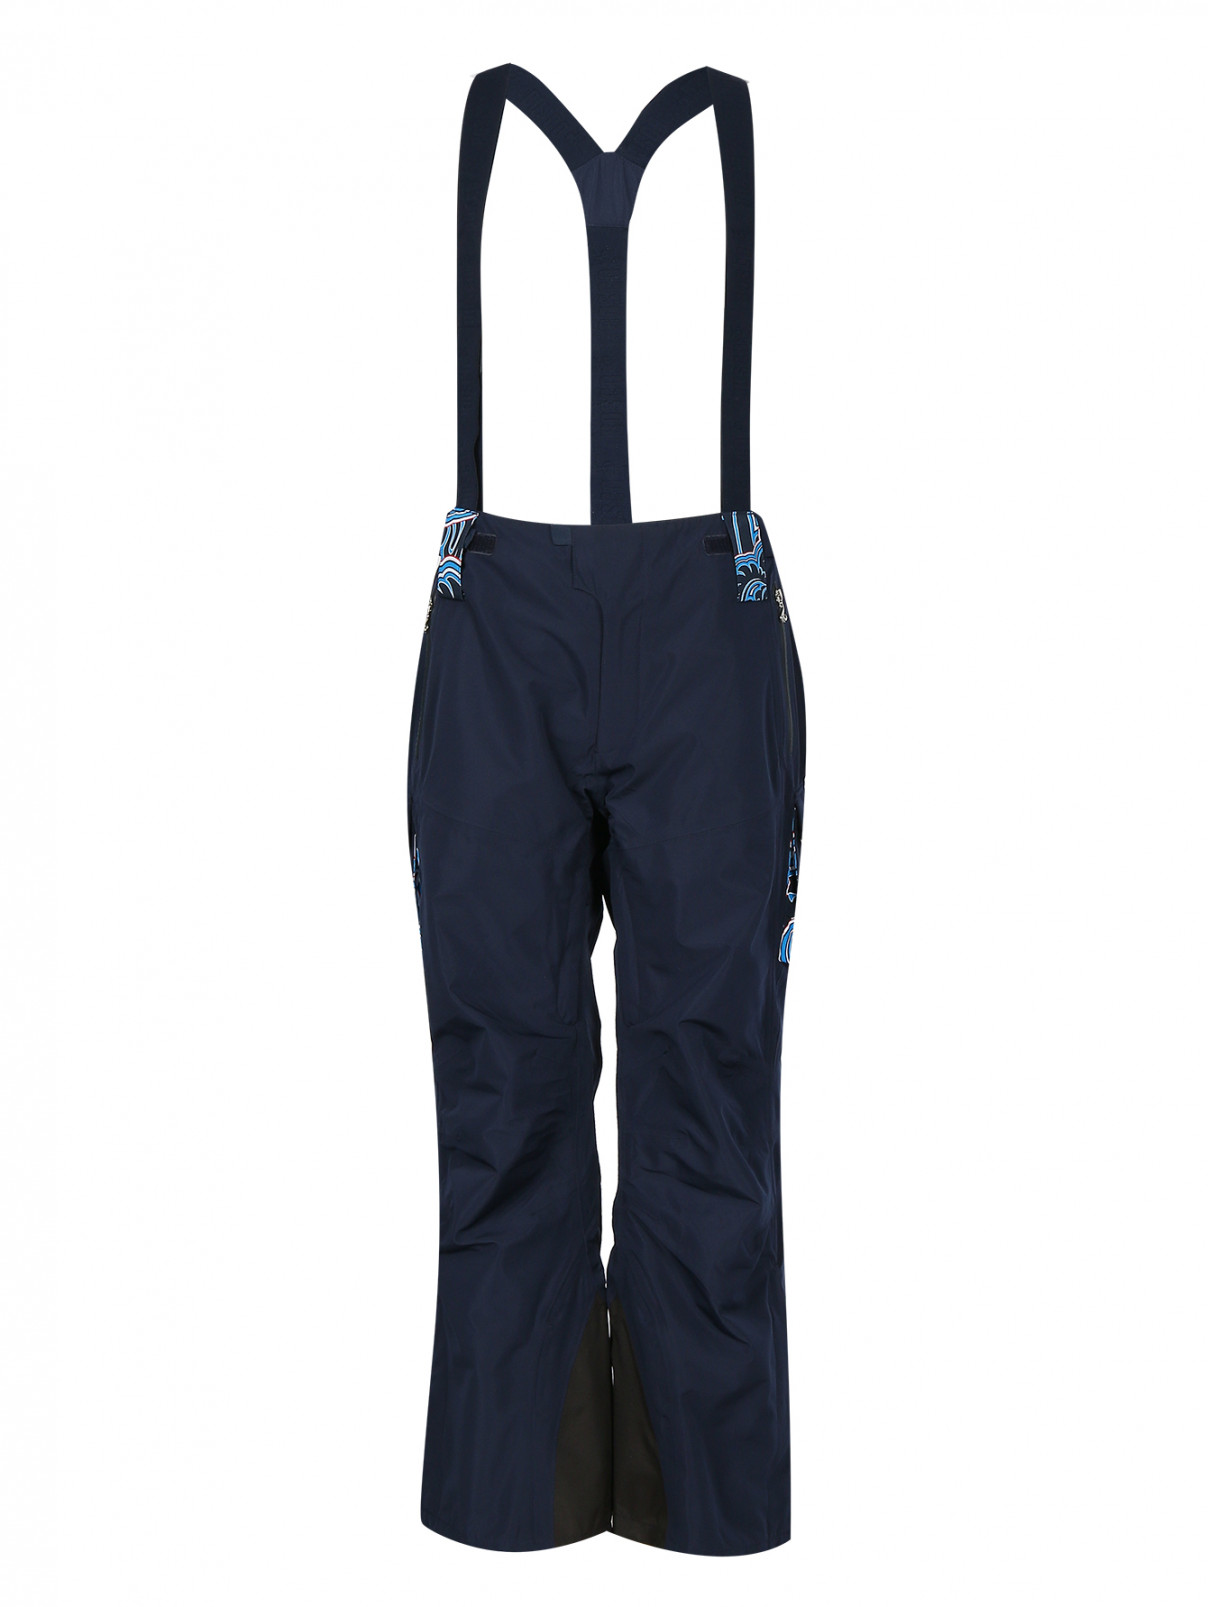 Брюки горнолыжные с накладными карманами Sochi 2014  –  Общий вид  – Цвет:  Синий